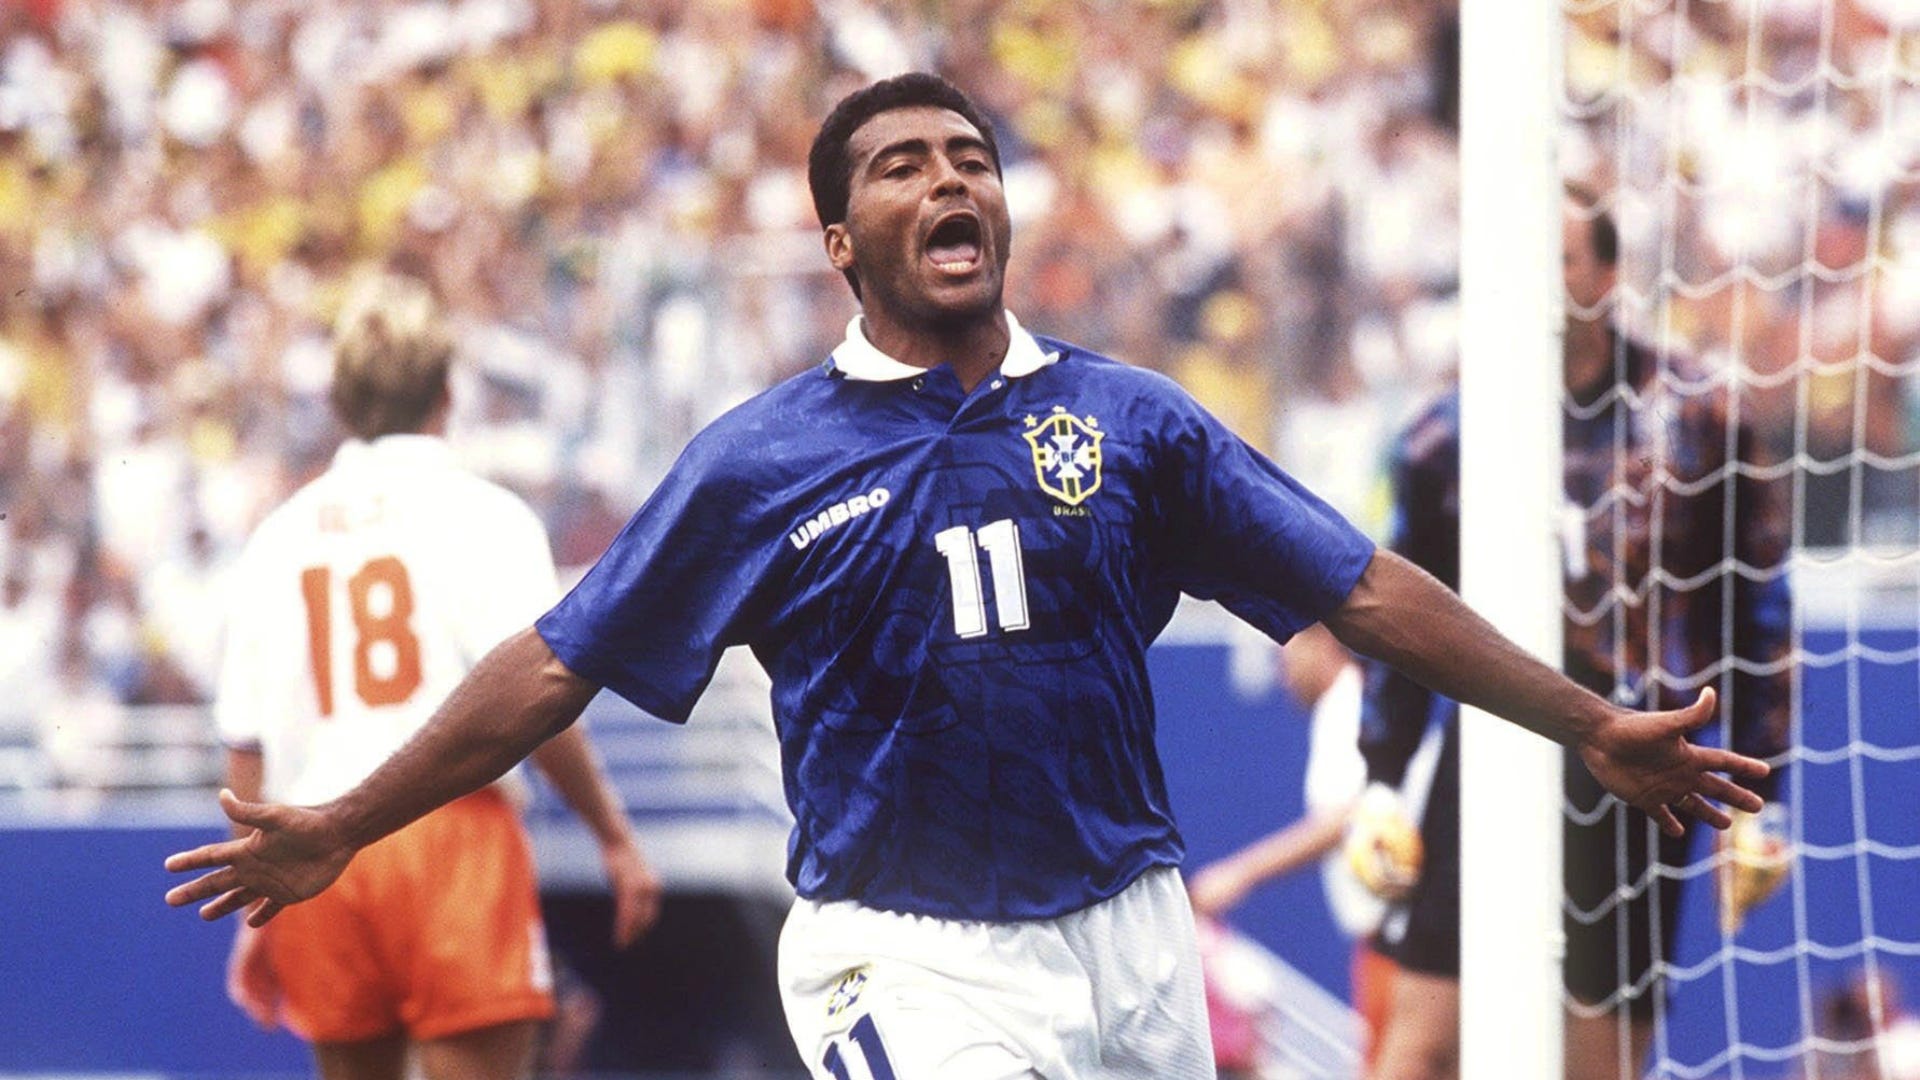 FIFA Rewind: Assista ao jogo Brasil x França da Copa do Mundo de 1998 nesta  sexta-feira!